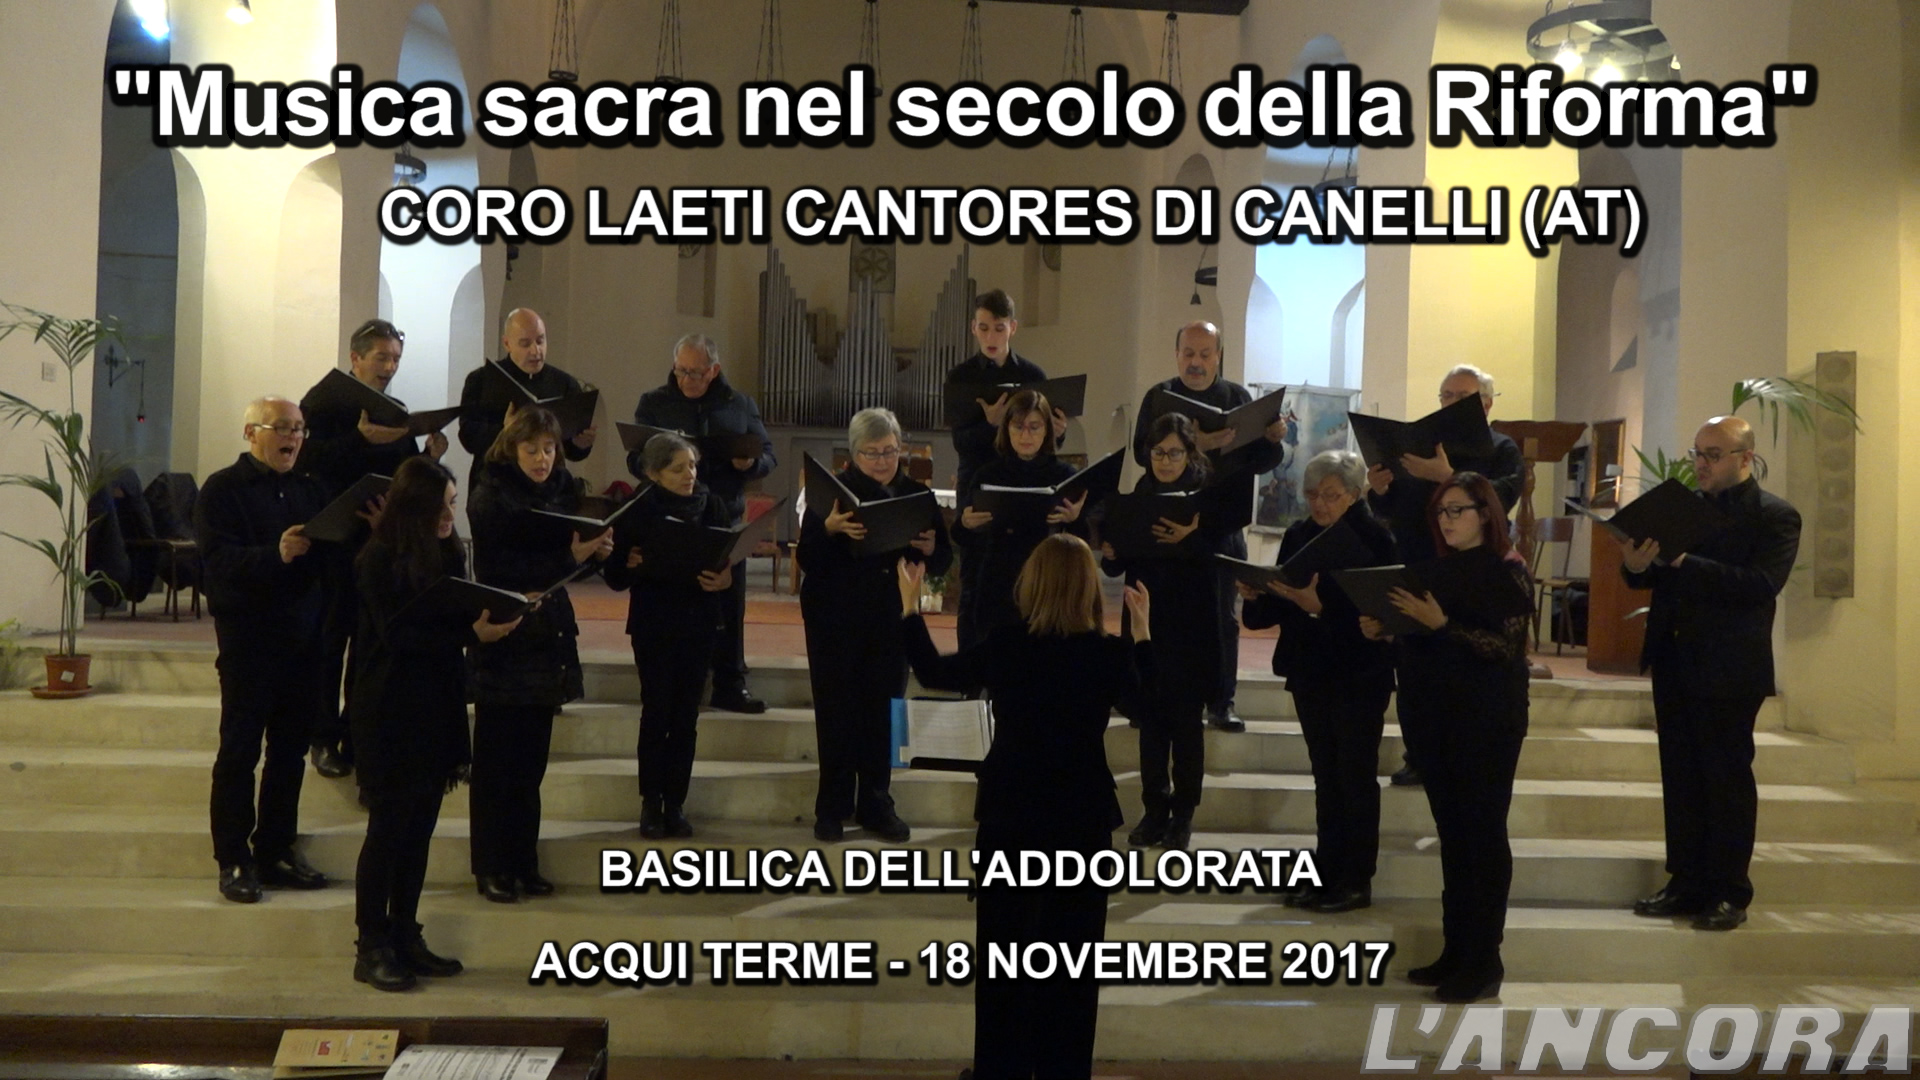 Coro Laeti Cantores di Canelli